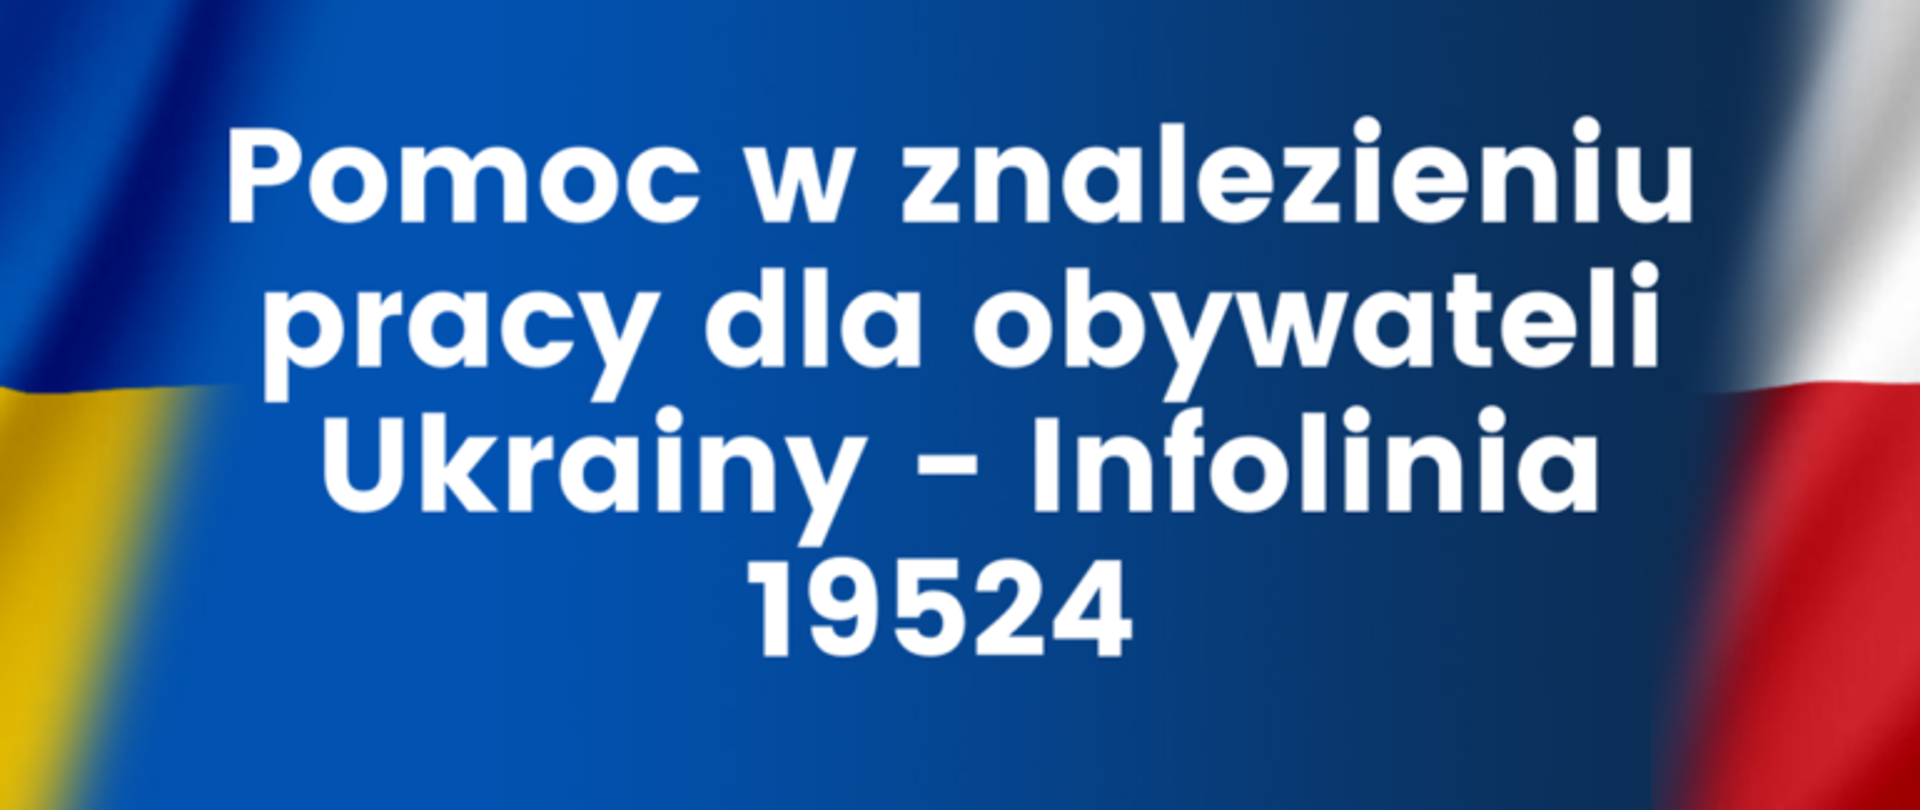 Napis na niebieskim tle: Pomoc w znalezieniu pracy dla obywateli Ukrainy - infolinia 19542. Z boku fragmenty flag polskiej i ukraińskiej.